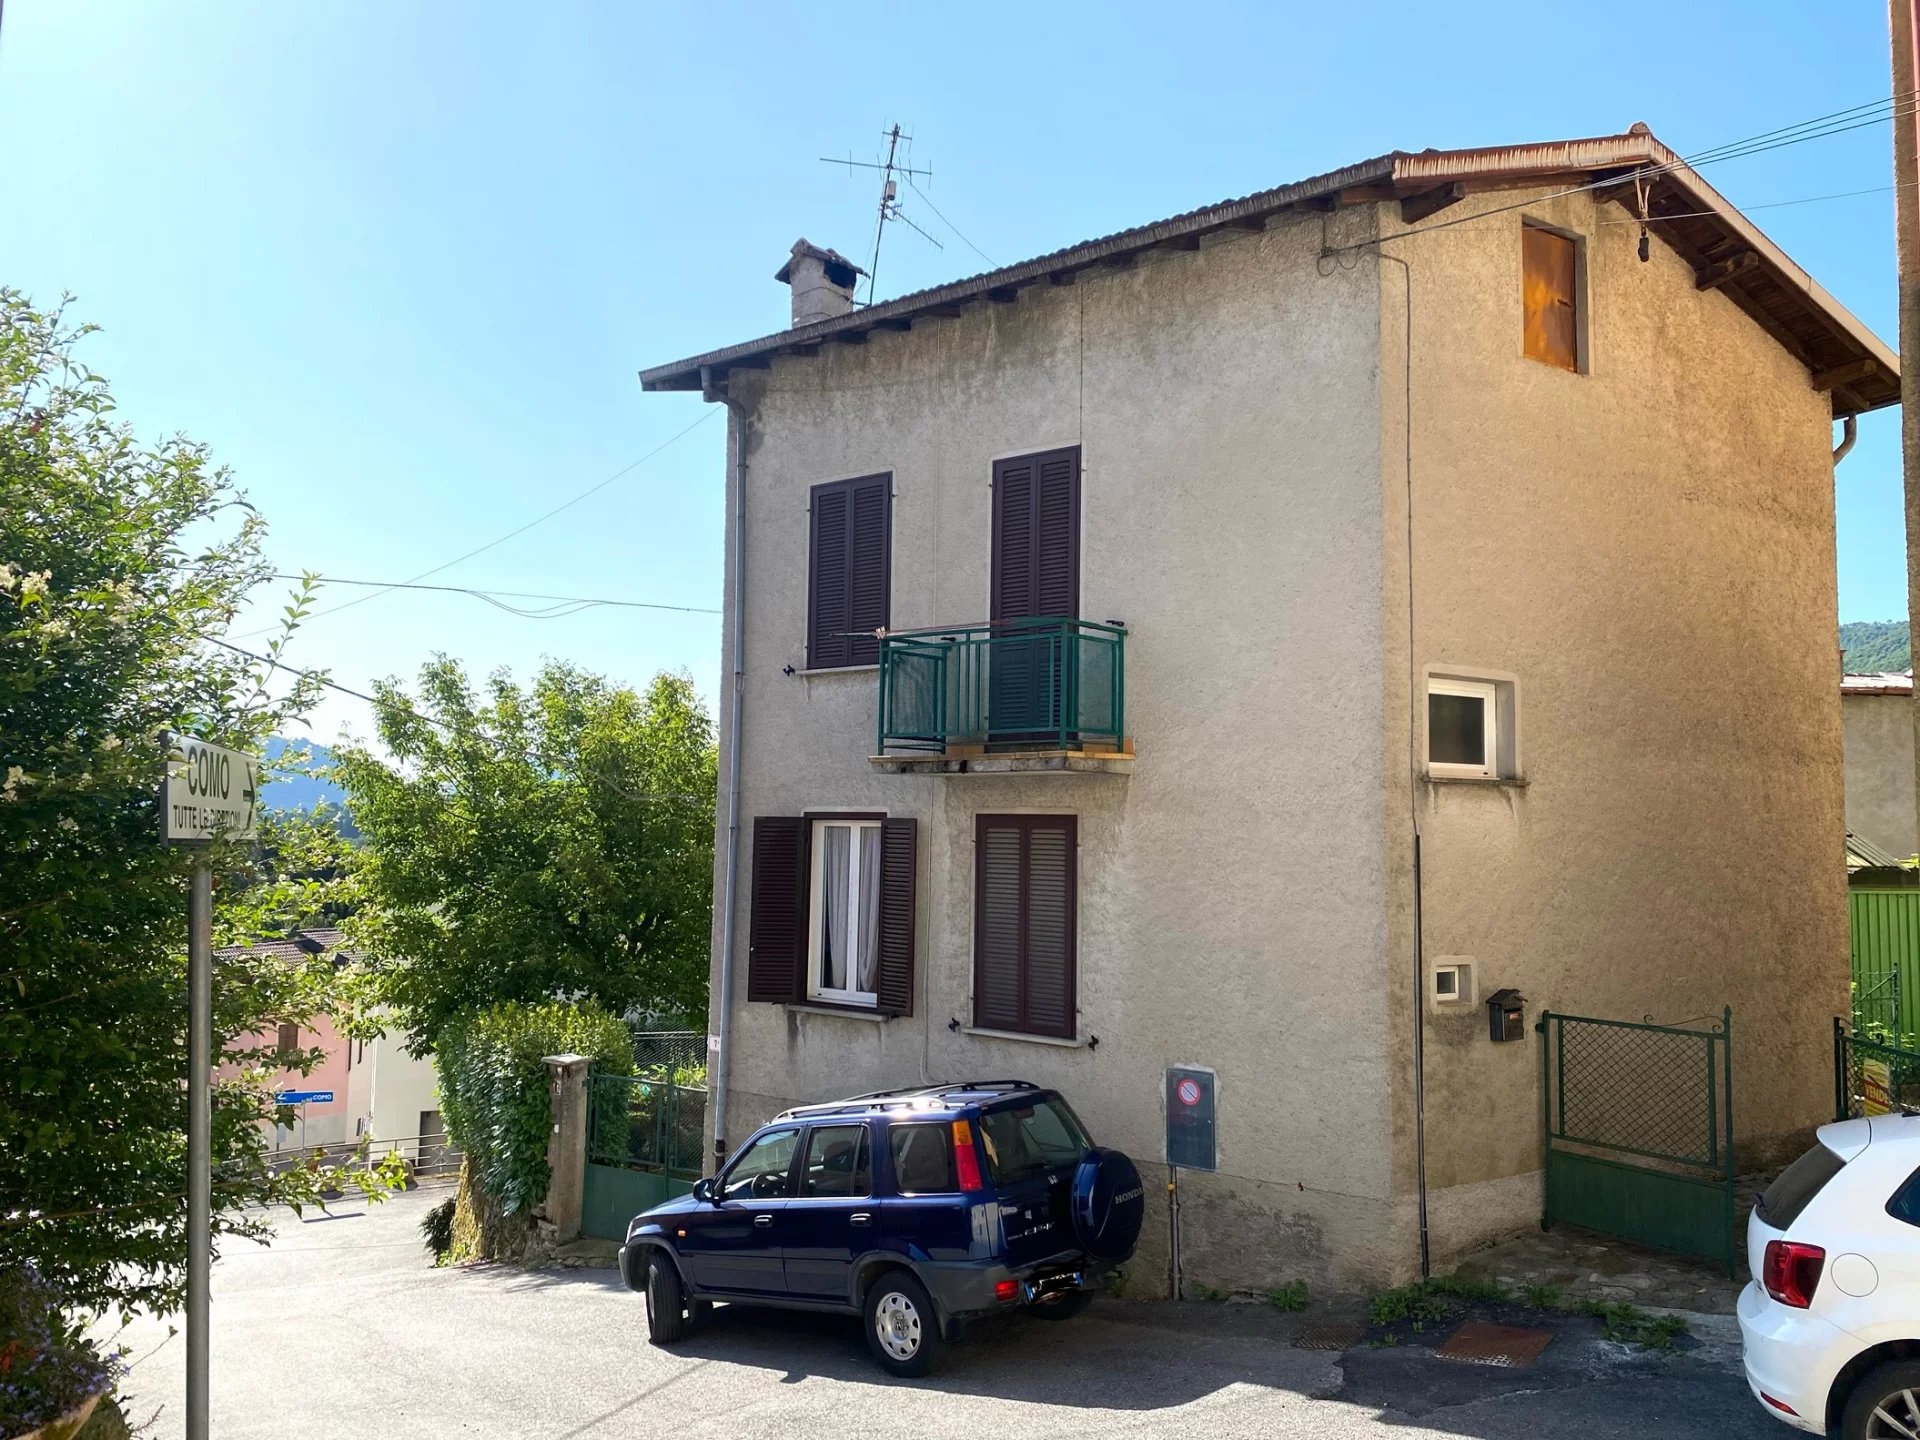 Sale Village house - Alta Valle Intelvi - Italy